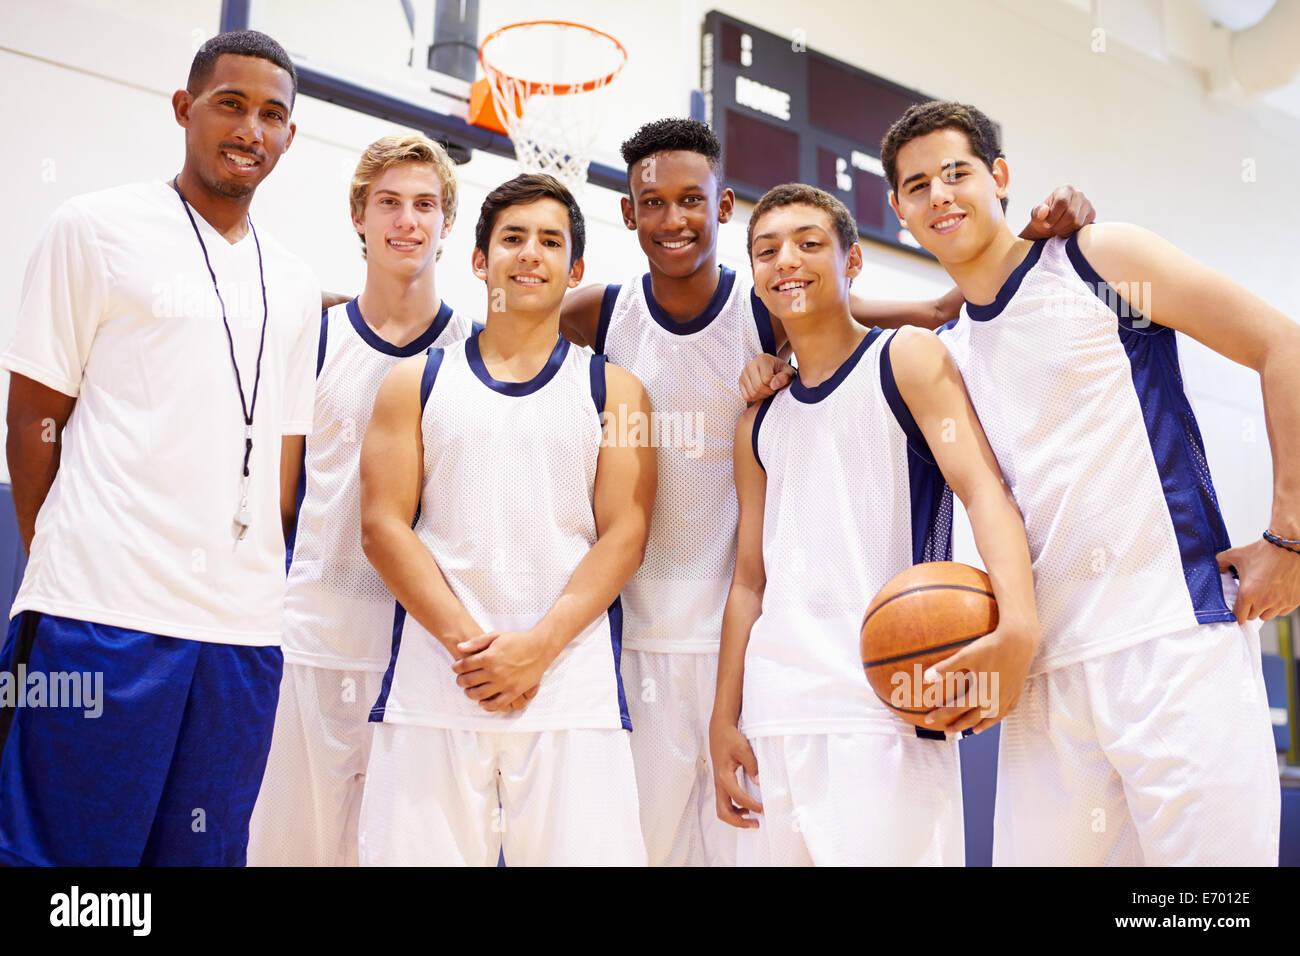 Membri del maschio della High School della squadra di basket con pullman Foto Stock